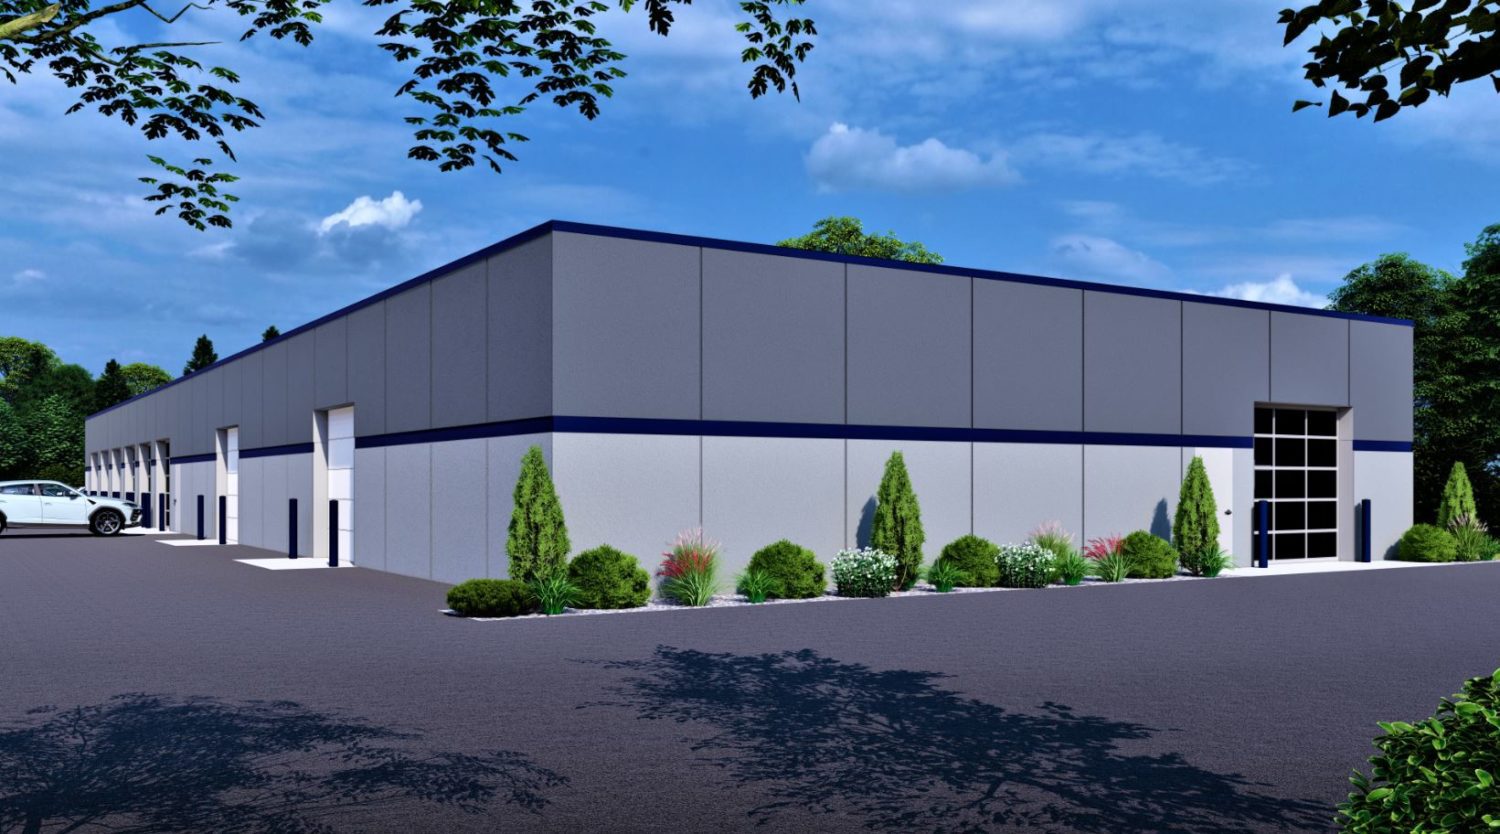 Grand Subaru Rendering - Keller, Inc. to Build for Grand Subaru